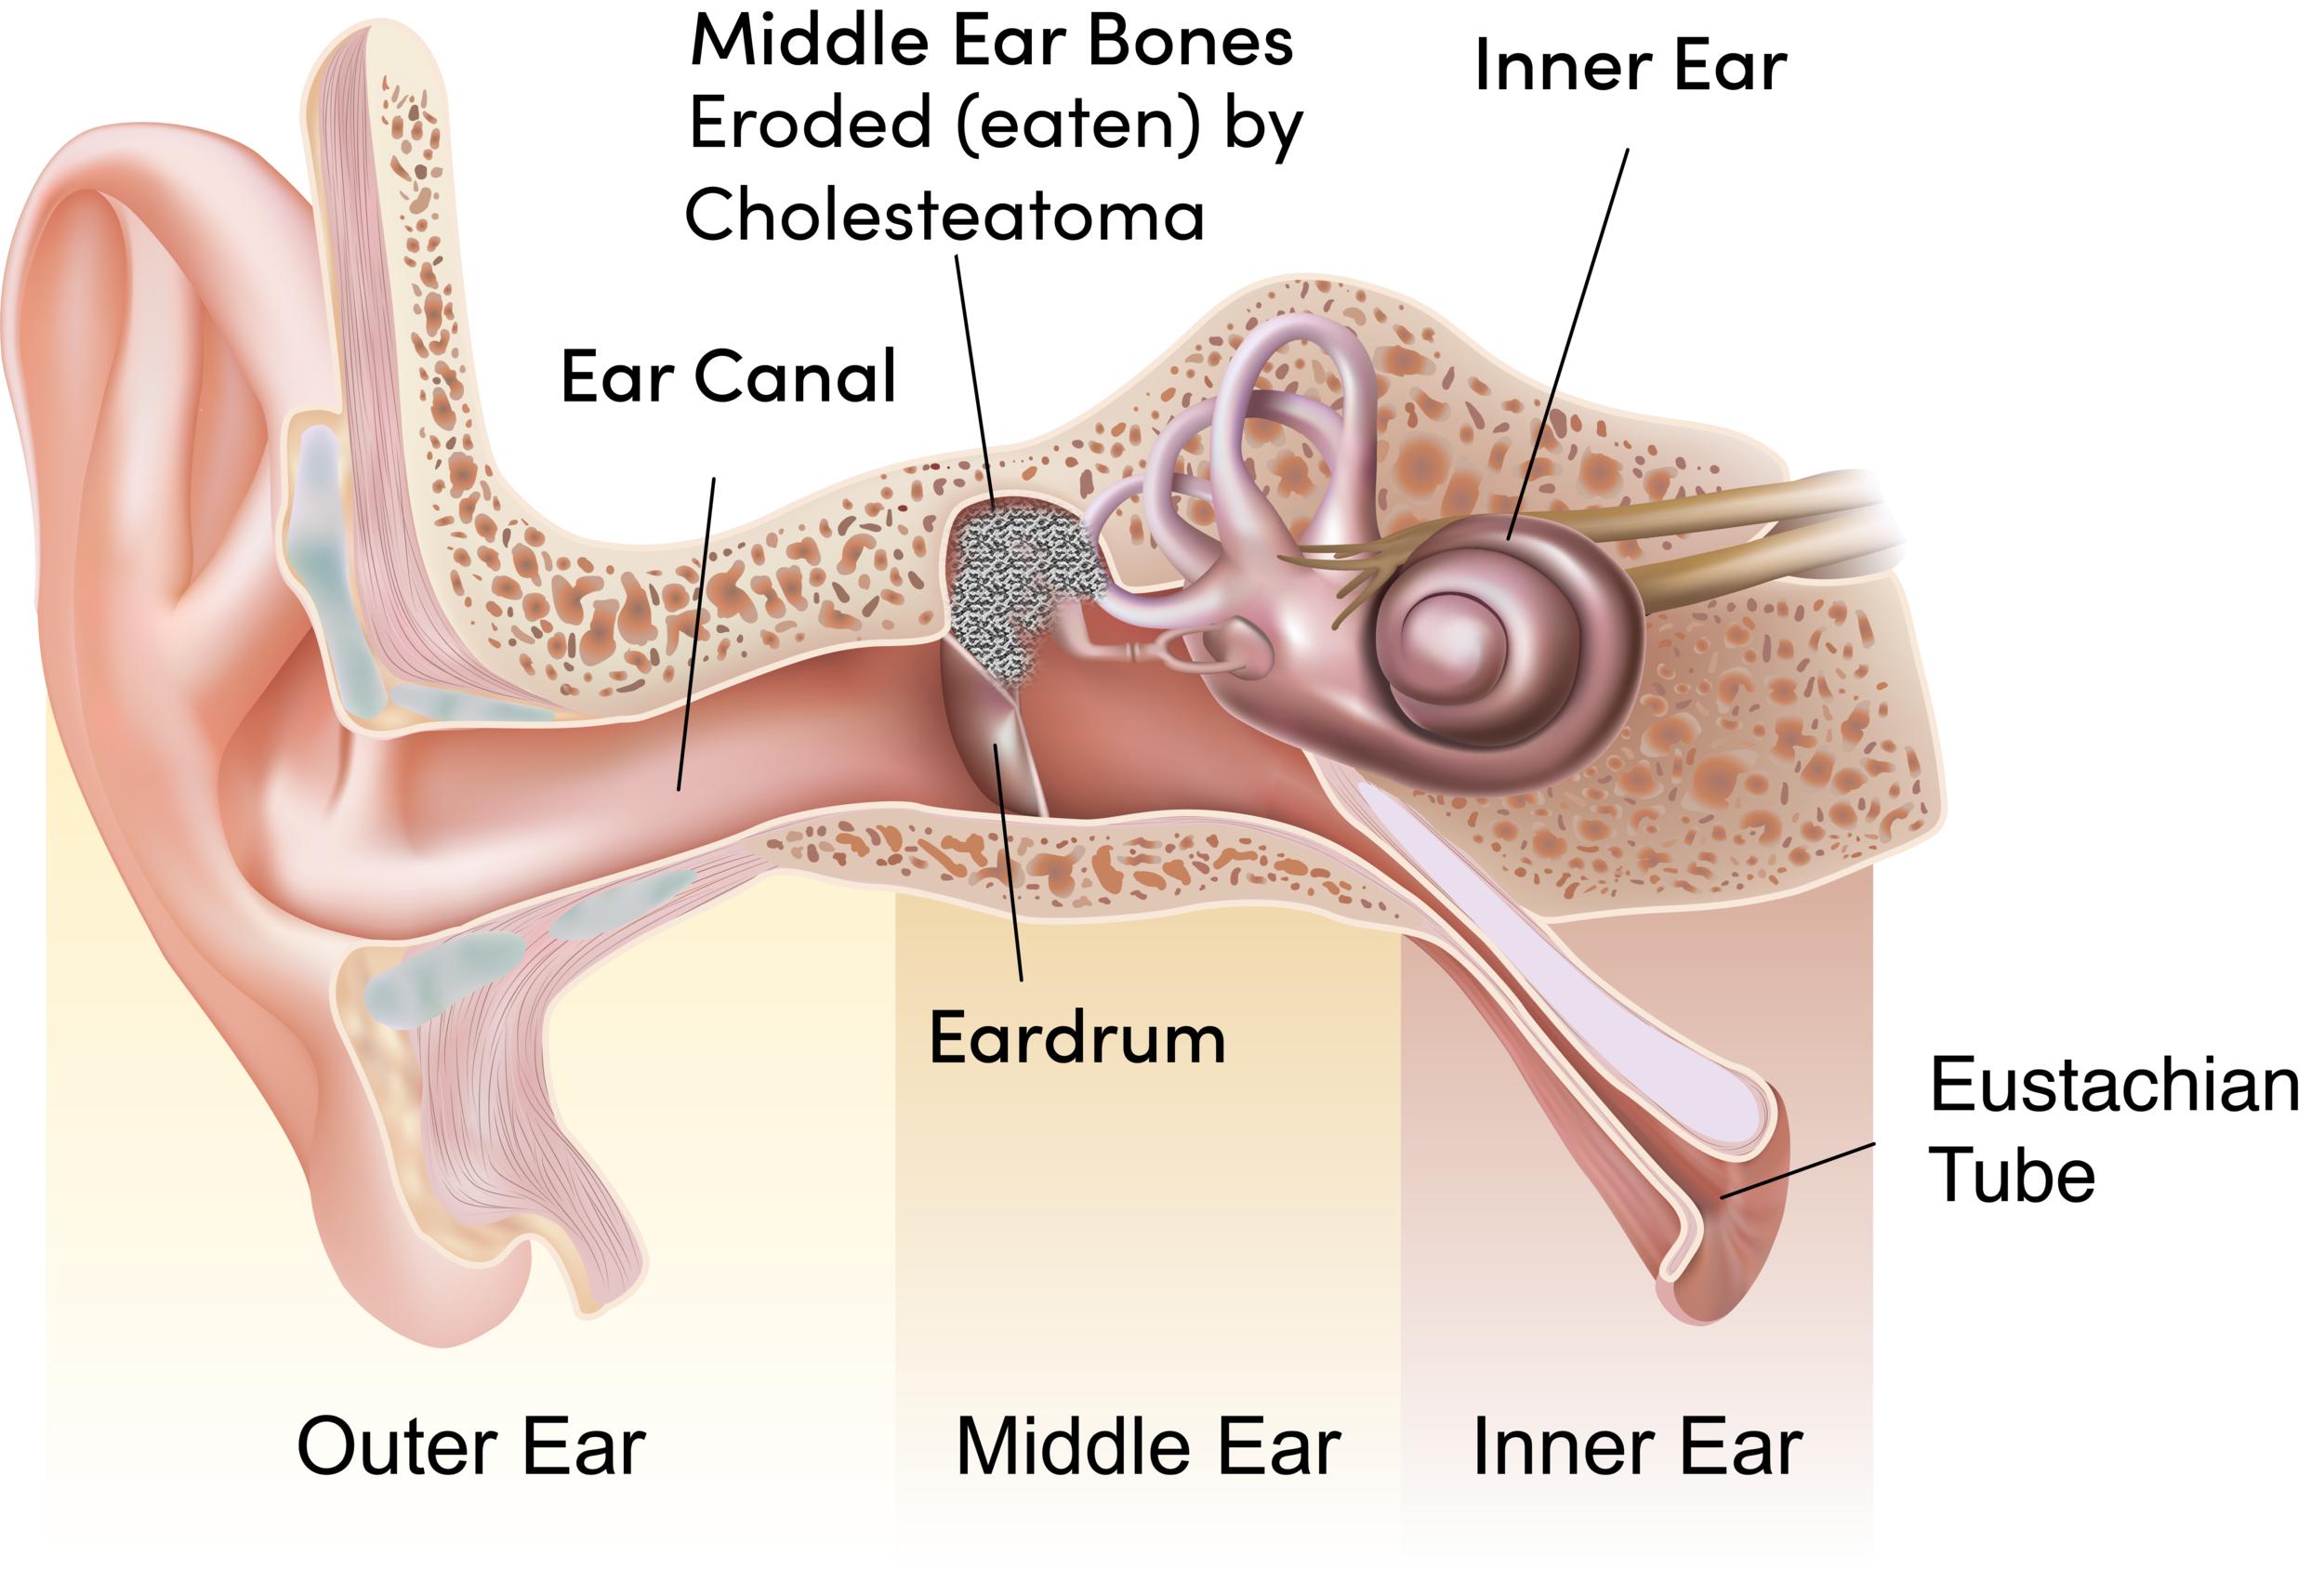 Ear drum